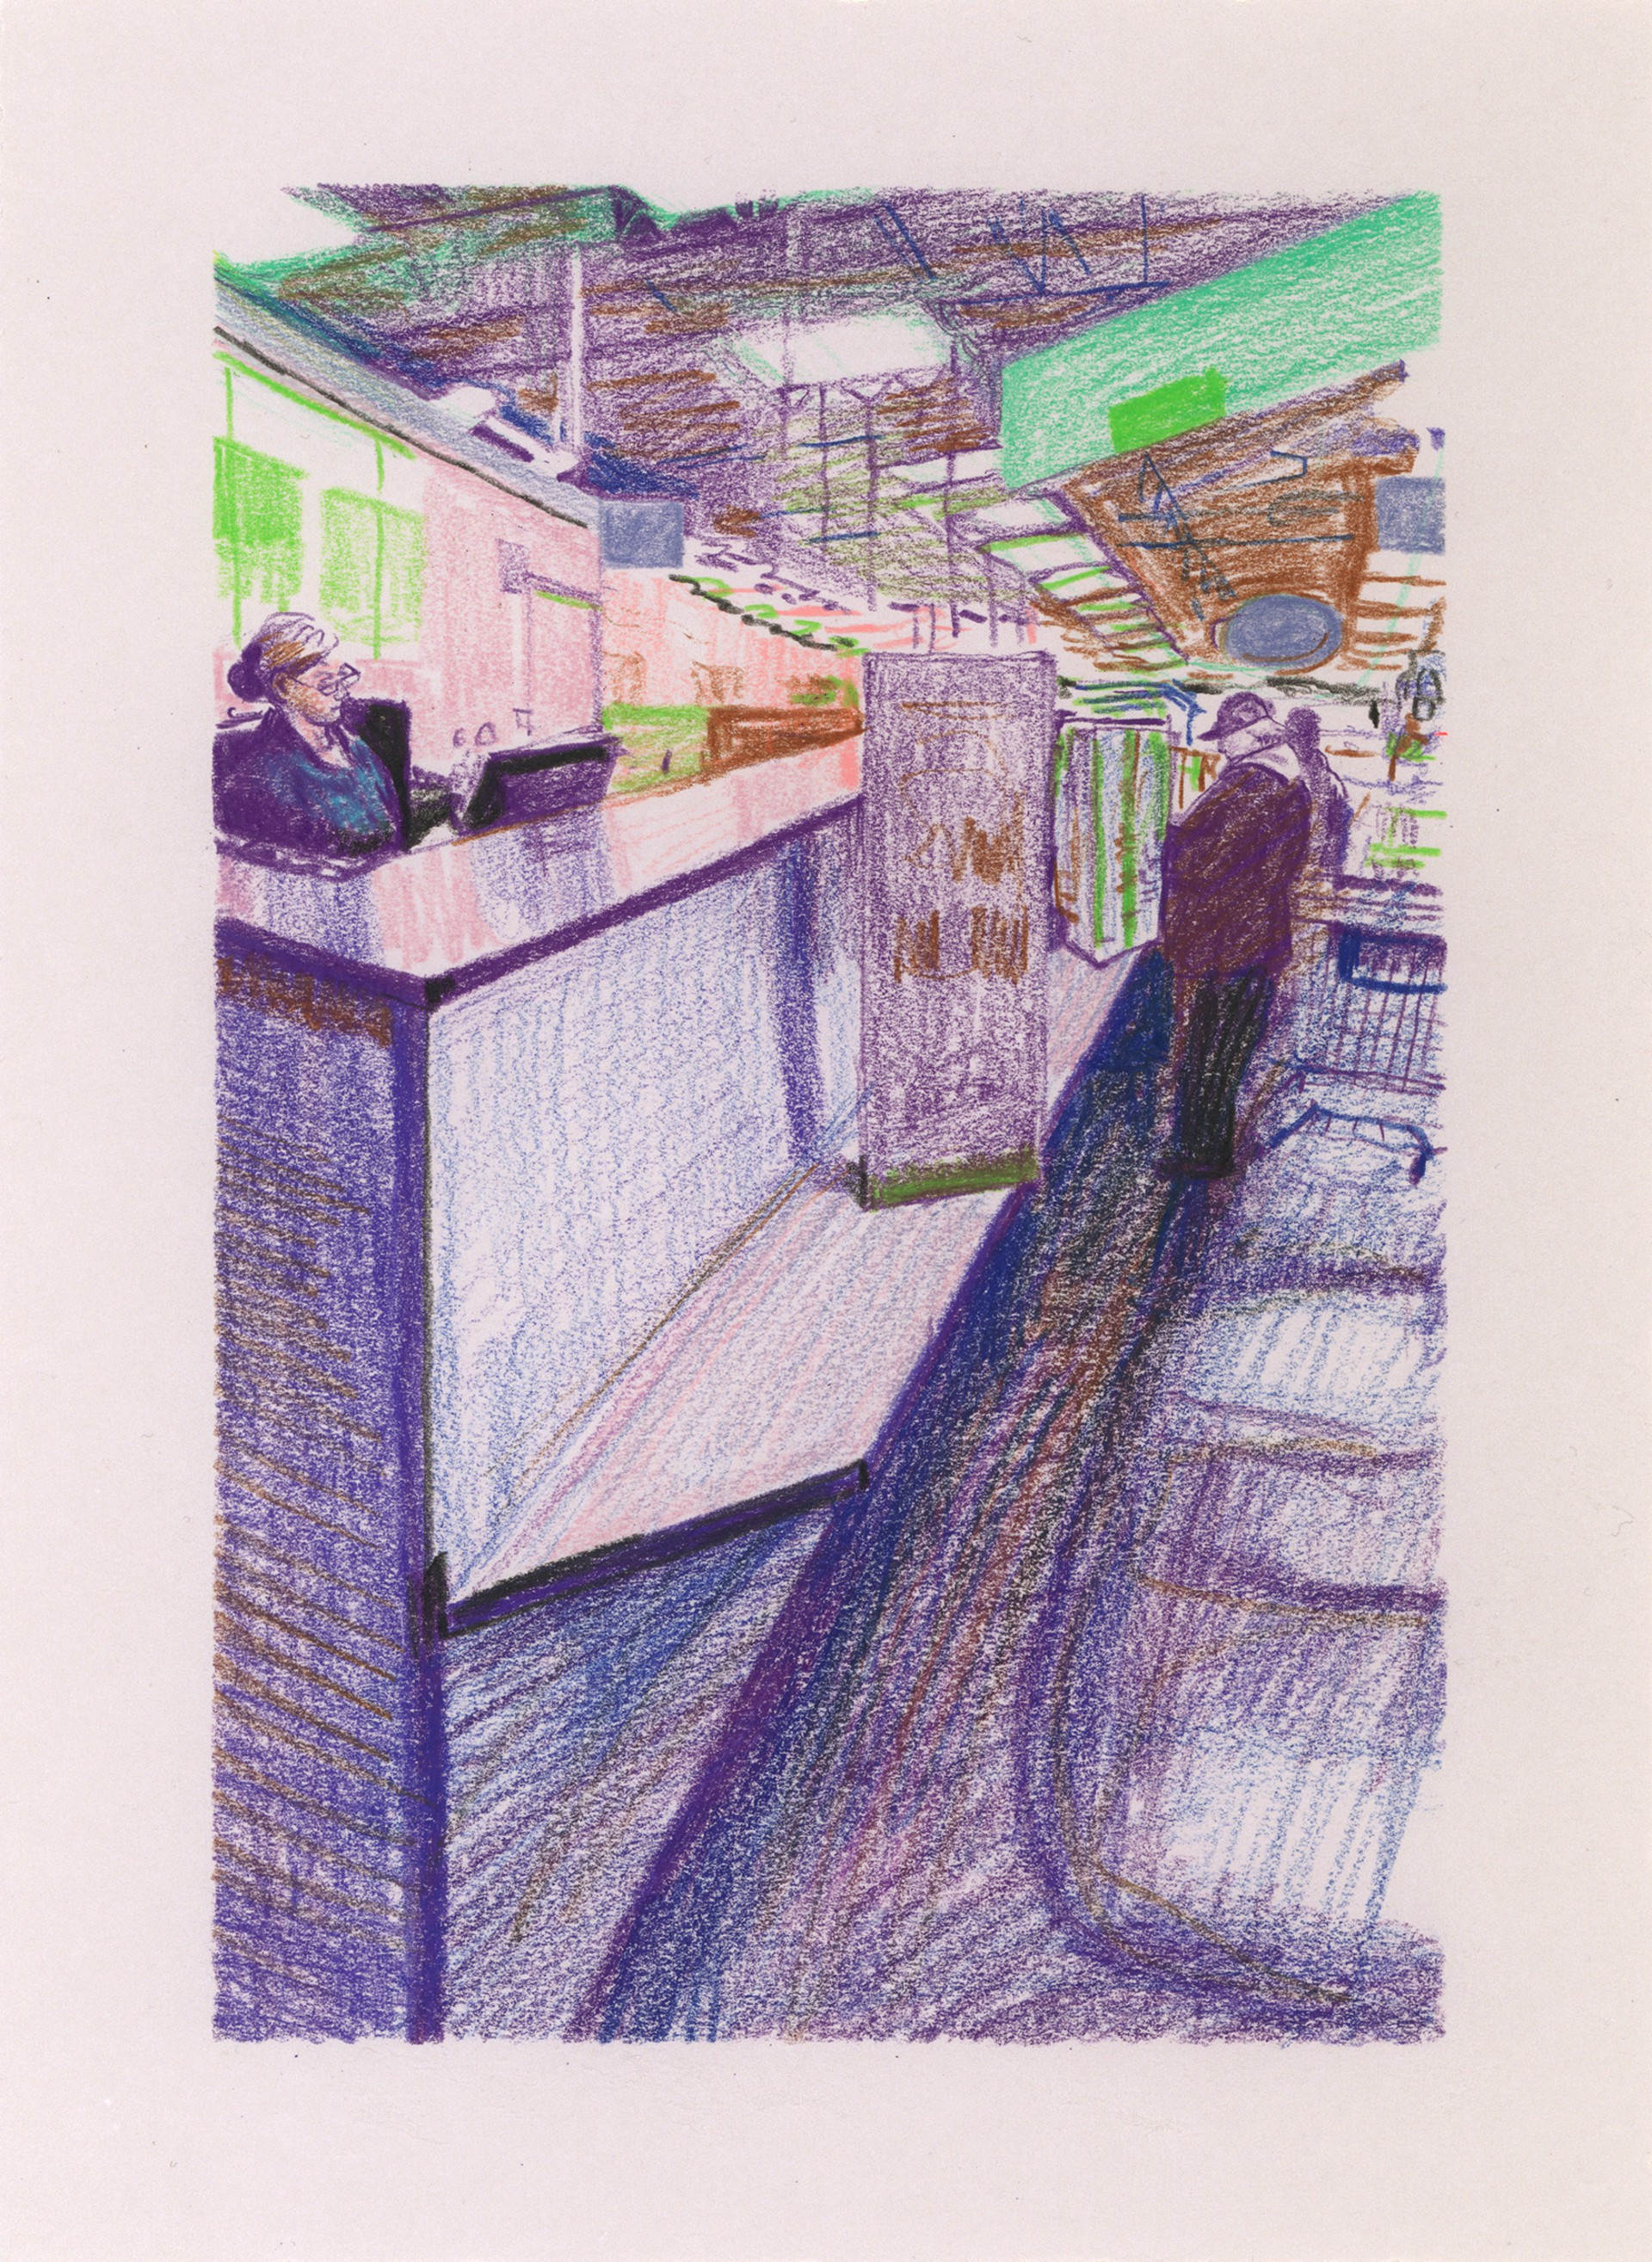 Marketplace/Cashier #19 by Eilis Crean